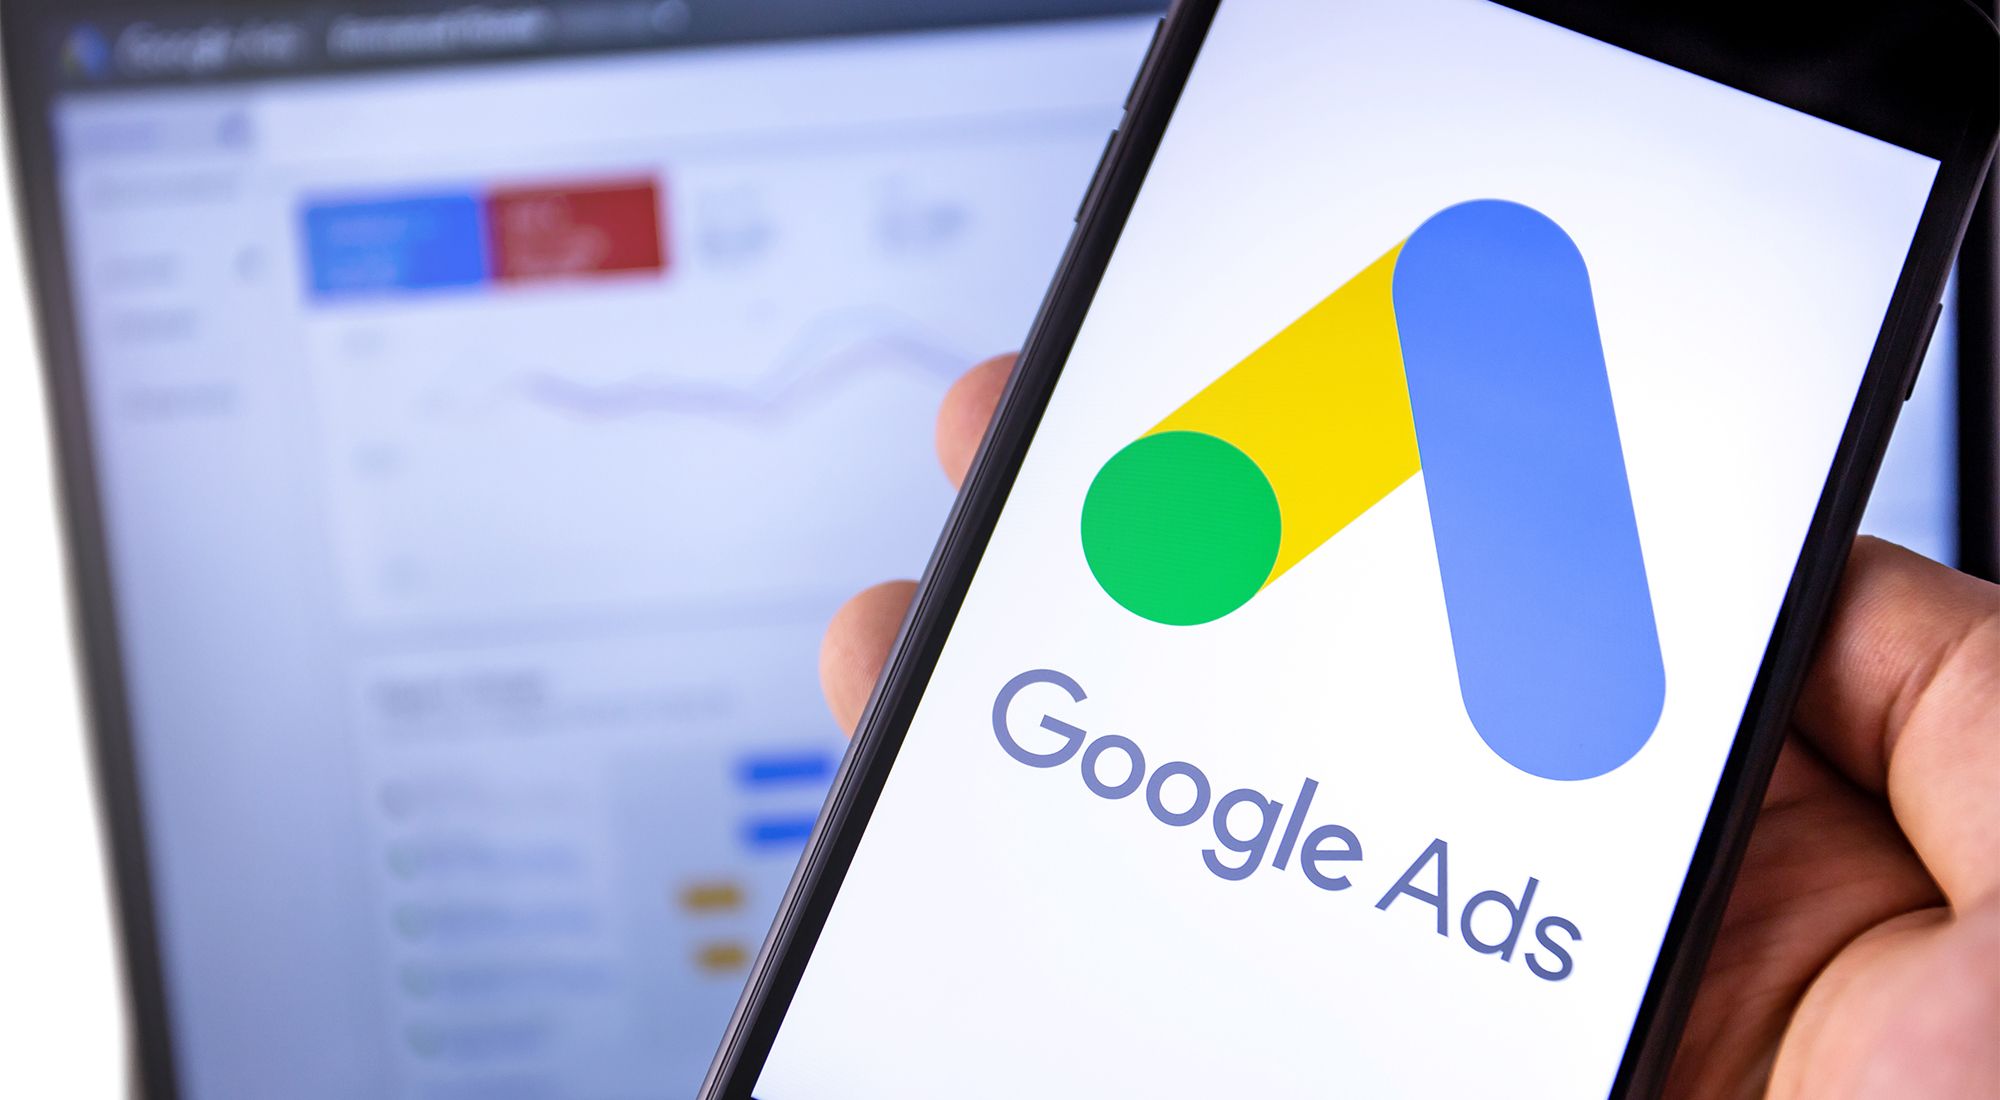 Quảng Cáo Google: Hình Thức Vận Hành & Mục Tiêu Truyền Thông Nào Phù Hợp Cho Marketing Bất Động Sản?